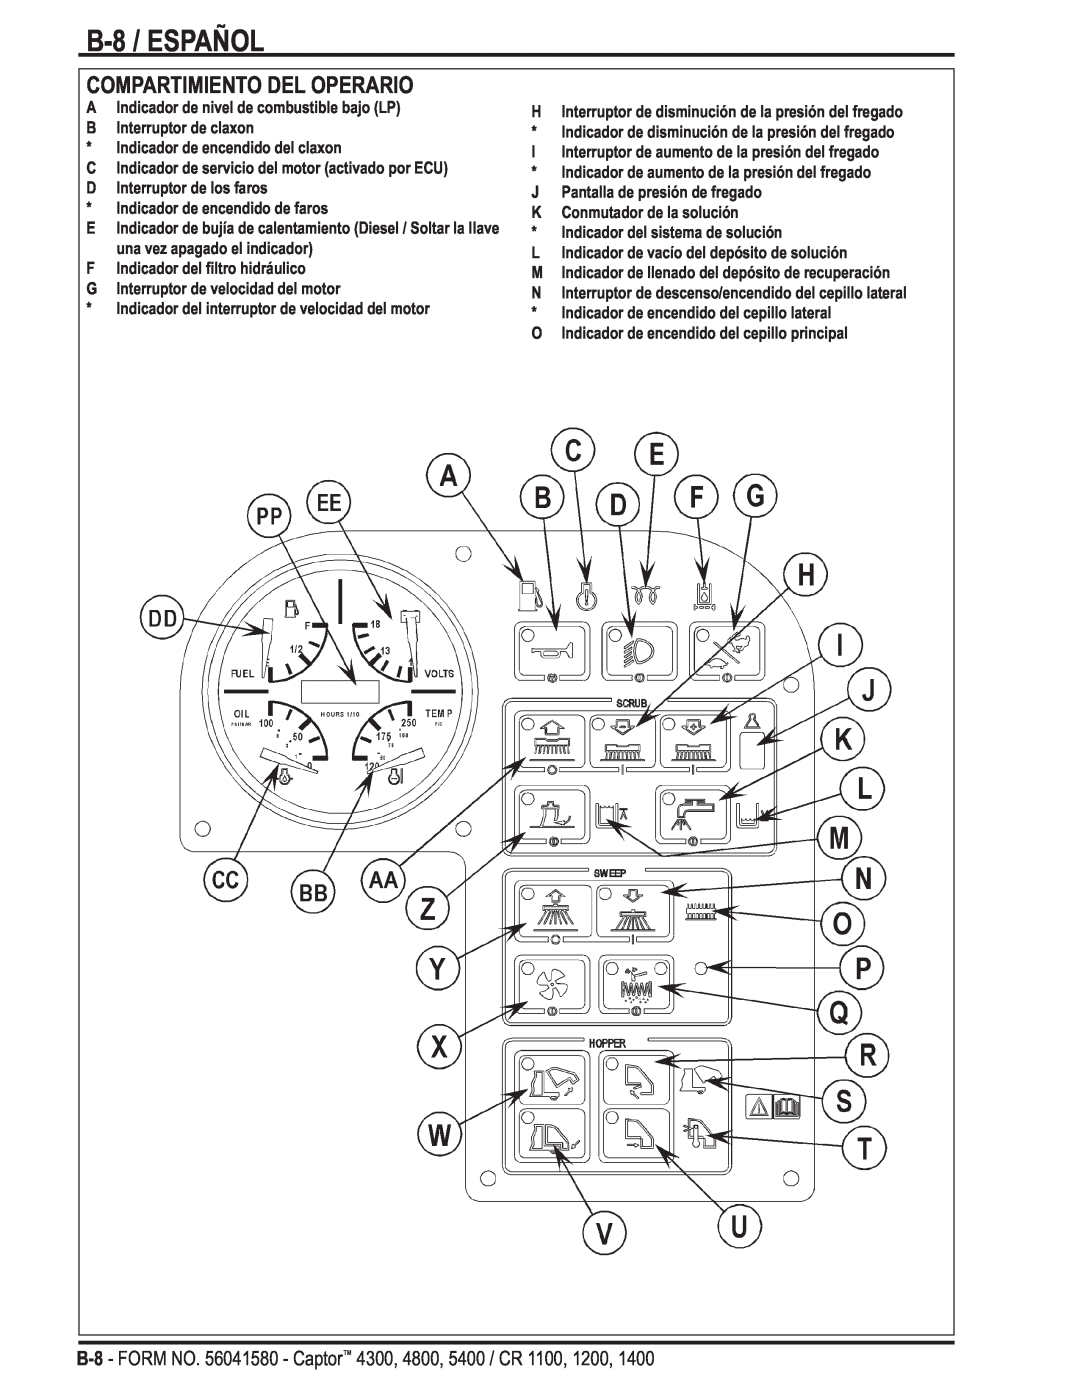 Nilfisk-ALTO 4300, 5400, 4800 manual B-8 /ESPAÑOL, Compartimiento Del Operario 